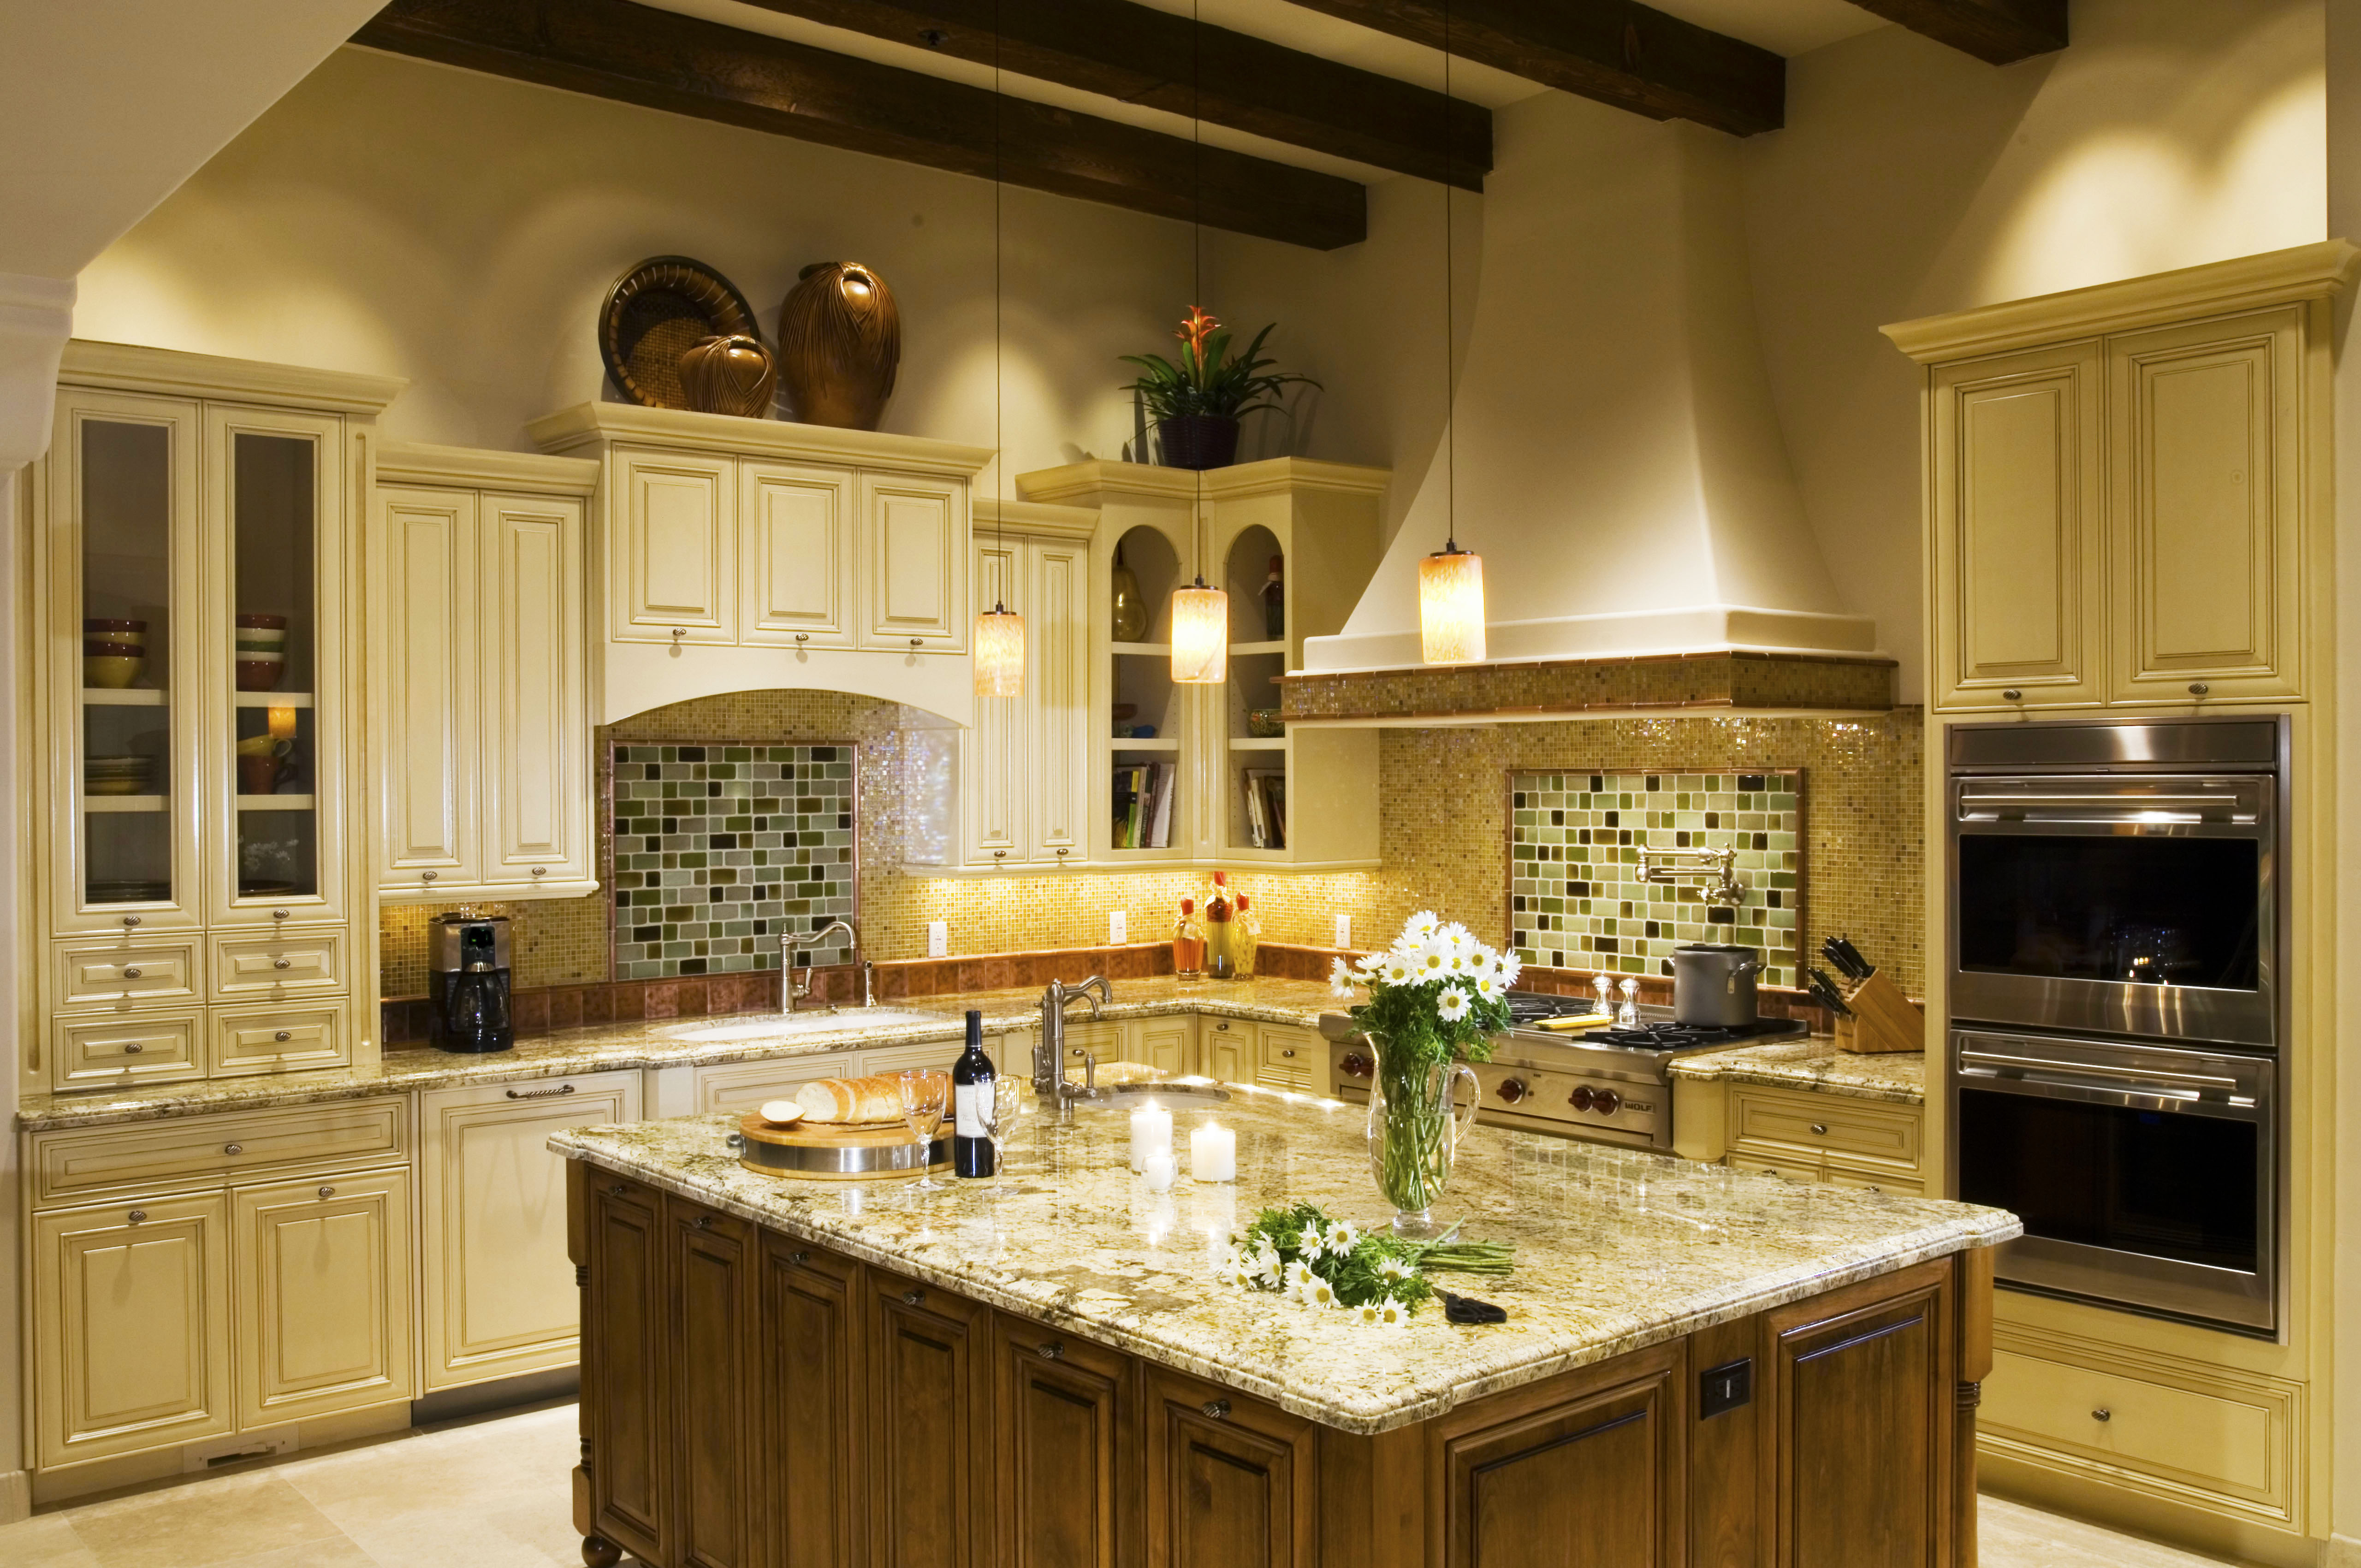 Cost To Remodel Kitchen Backsplash Designs Roy Home Design